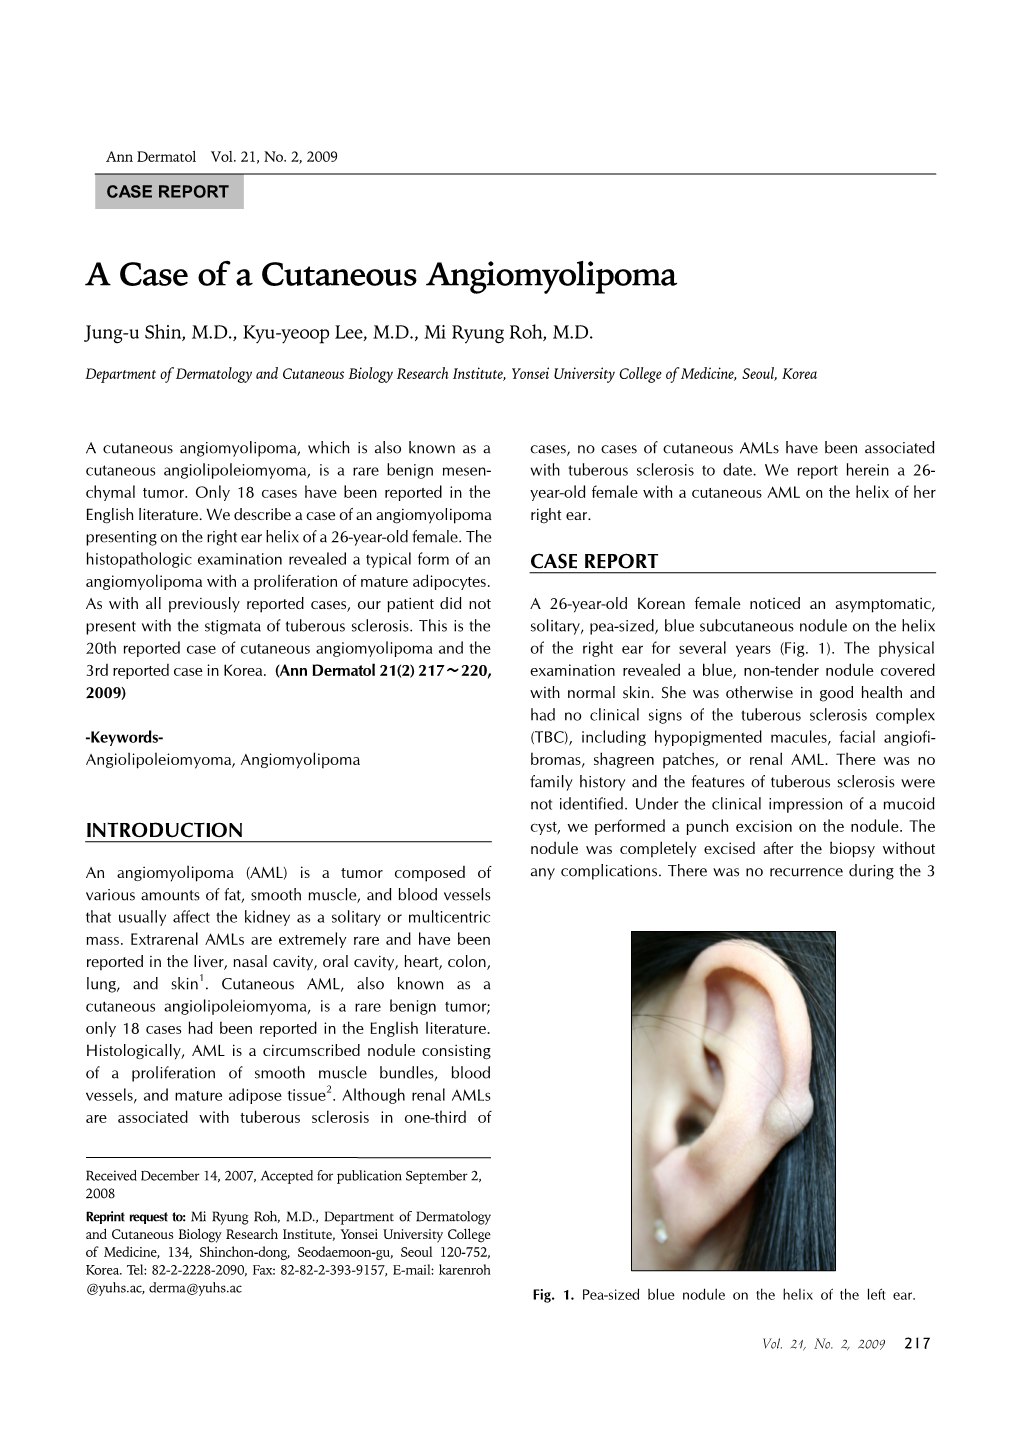 A Case of a Cutaneous Angiomyolipoma